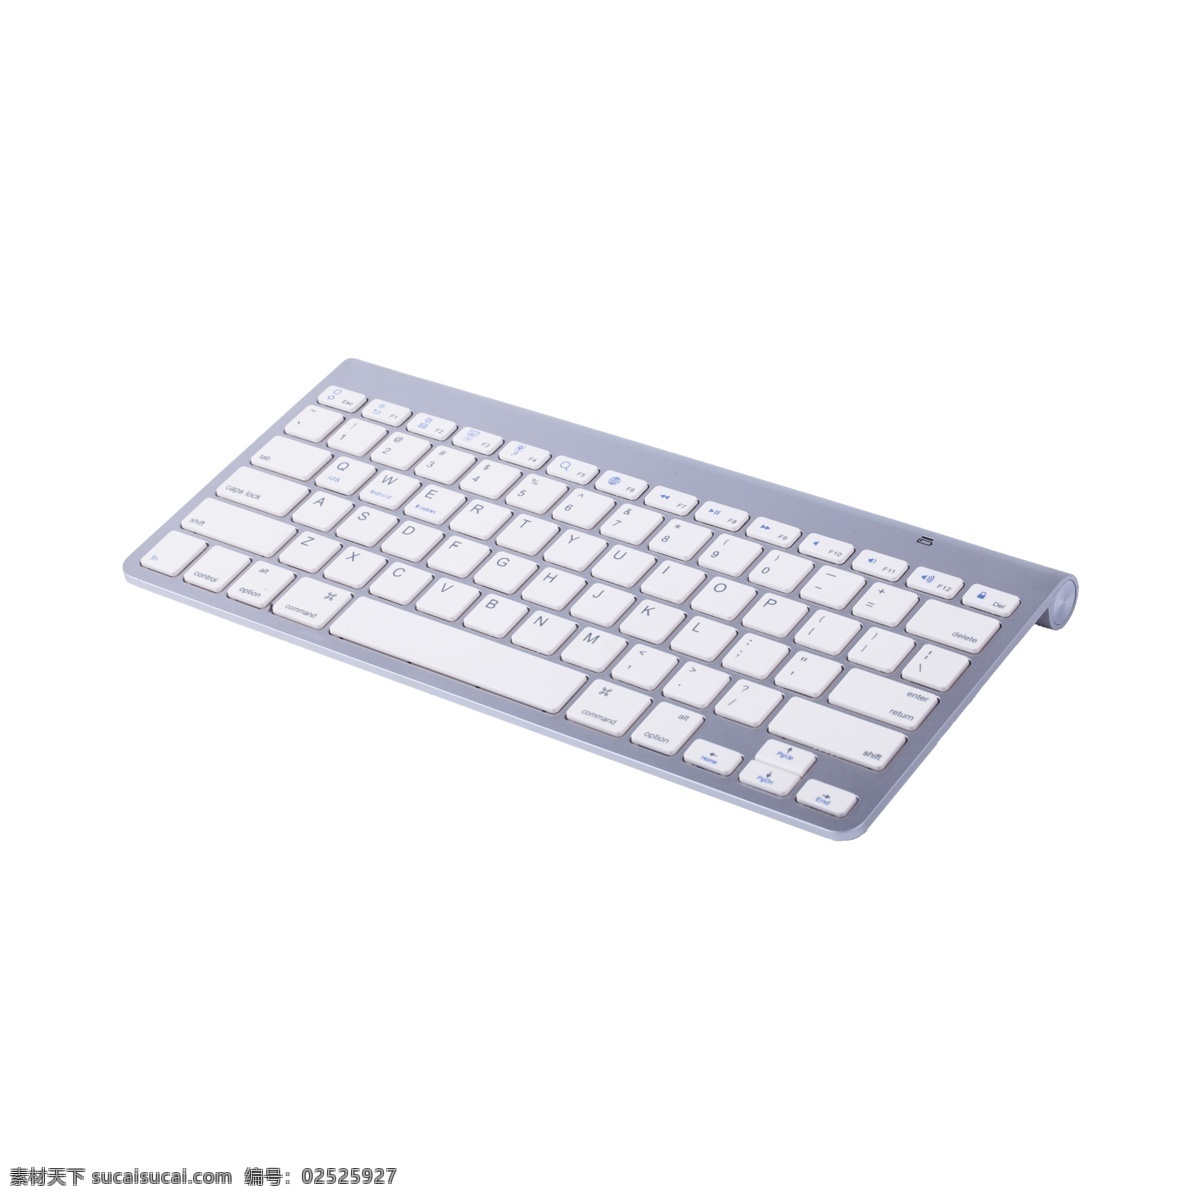 键盘 免 抠 银色键盘 无线键盘 有质感的键盘 无线键盘免抠 非全键盘 电脑配件